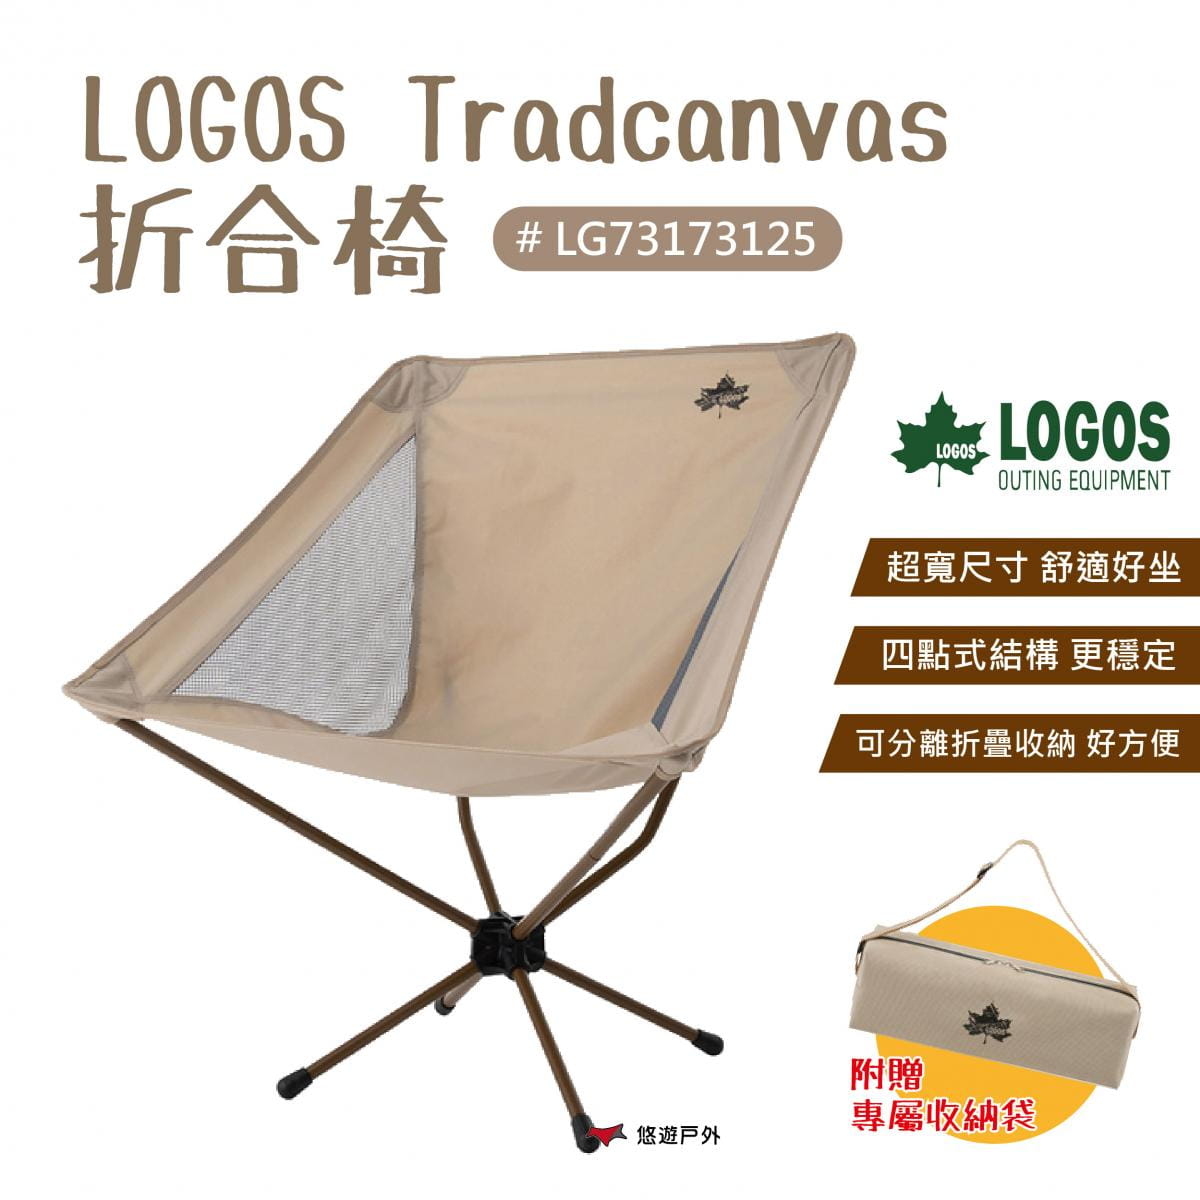 【LOGOS】Tradcanvas折合椅 LG73173125 (悠遊戶外) 0